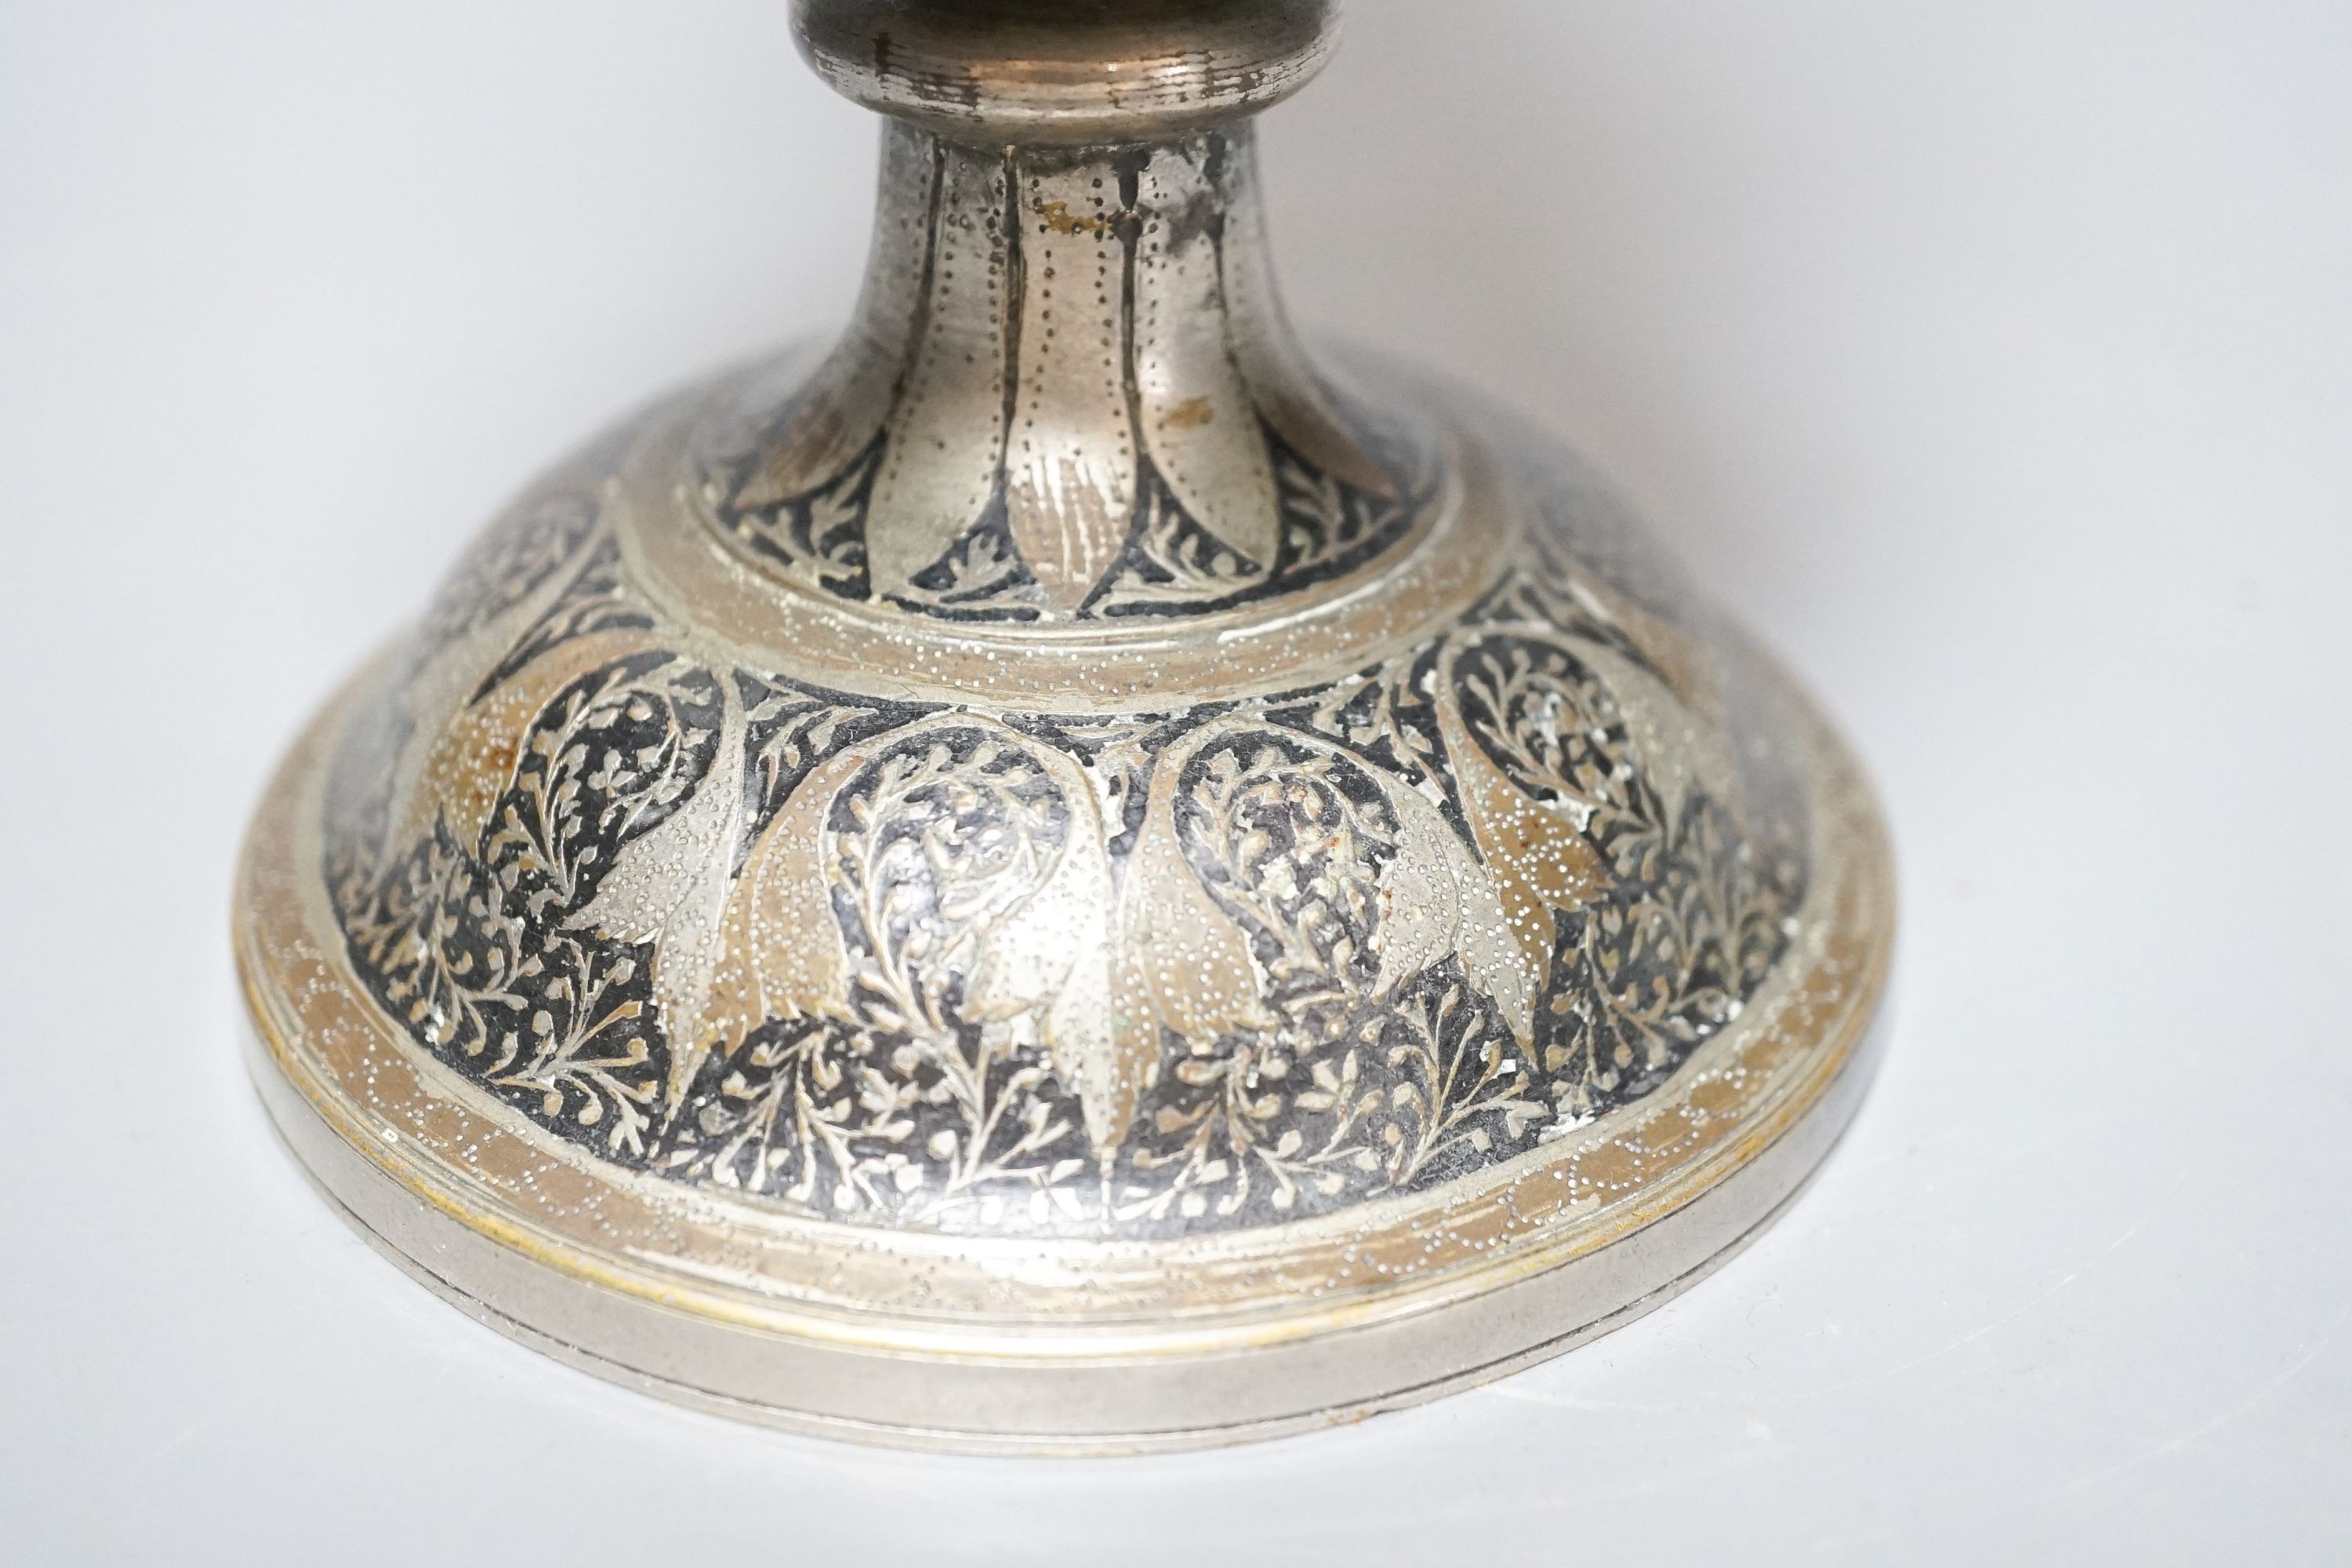 An Indian cast Benares ware vase 24cm